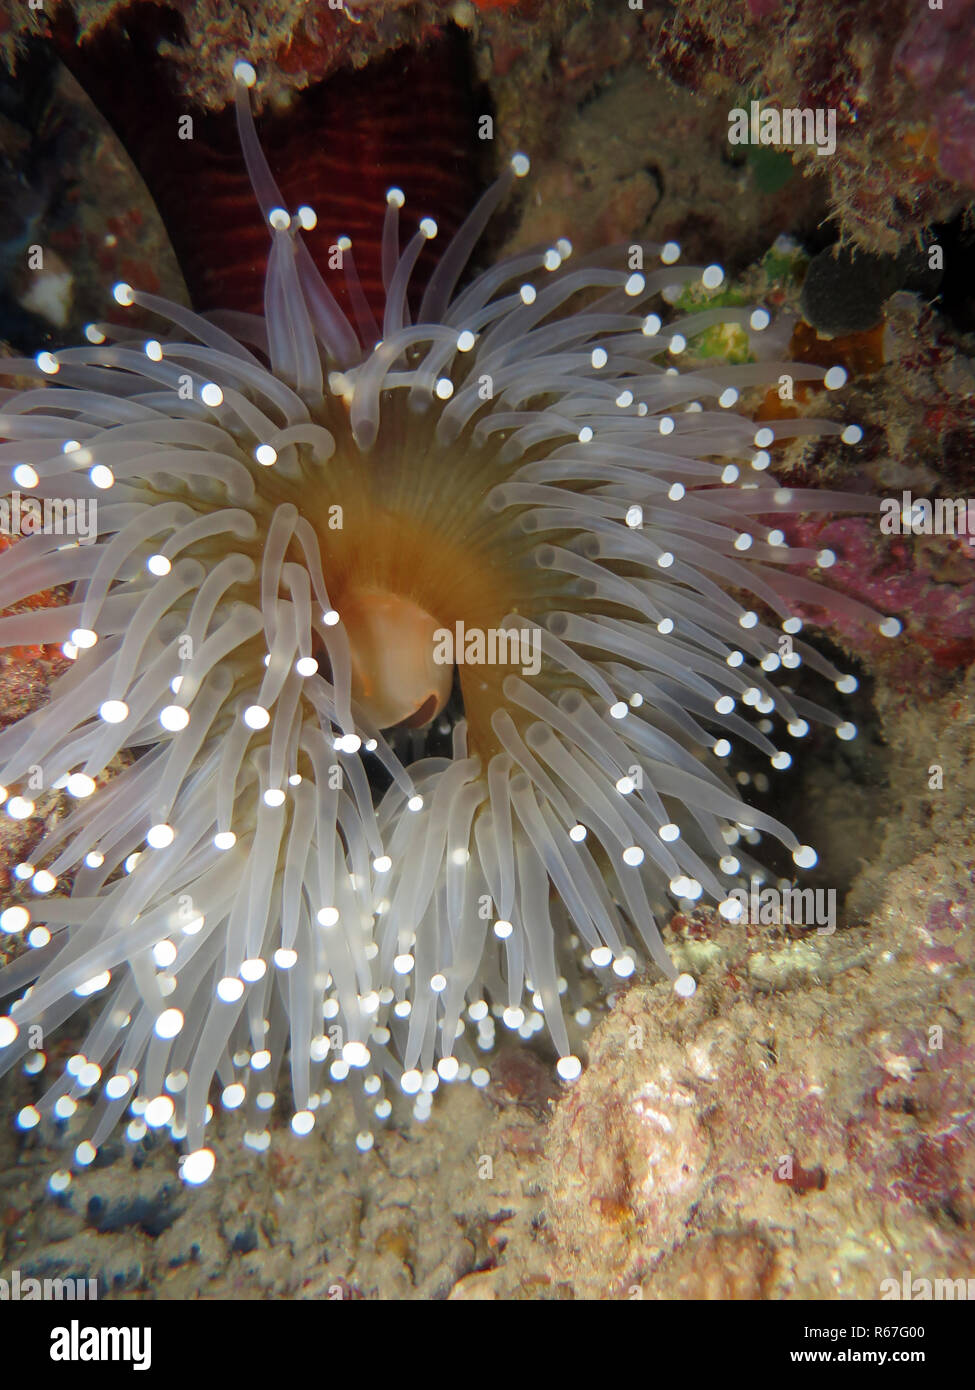 anemone (pseudocorynactis sp.) Stock Photo